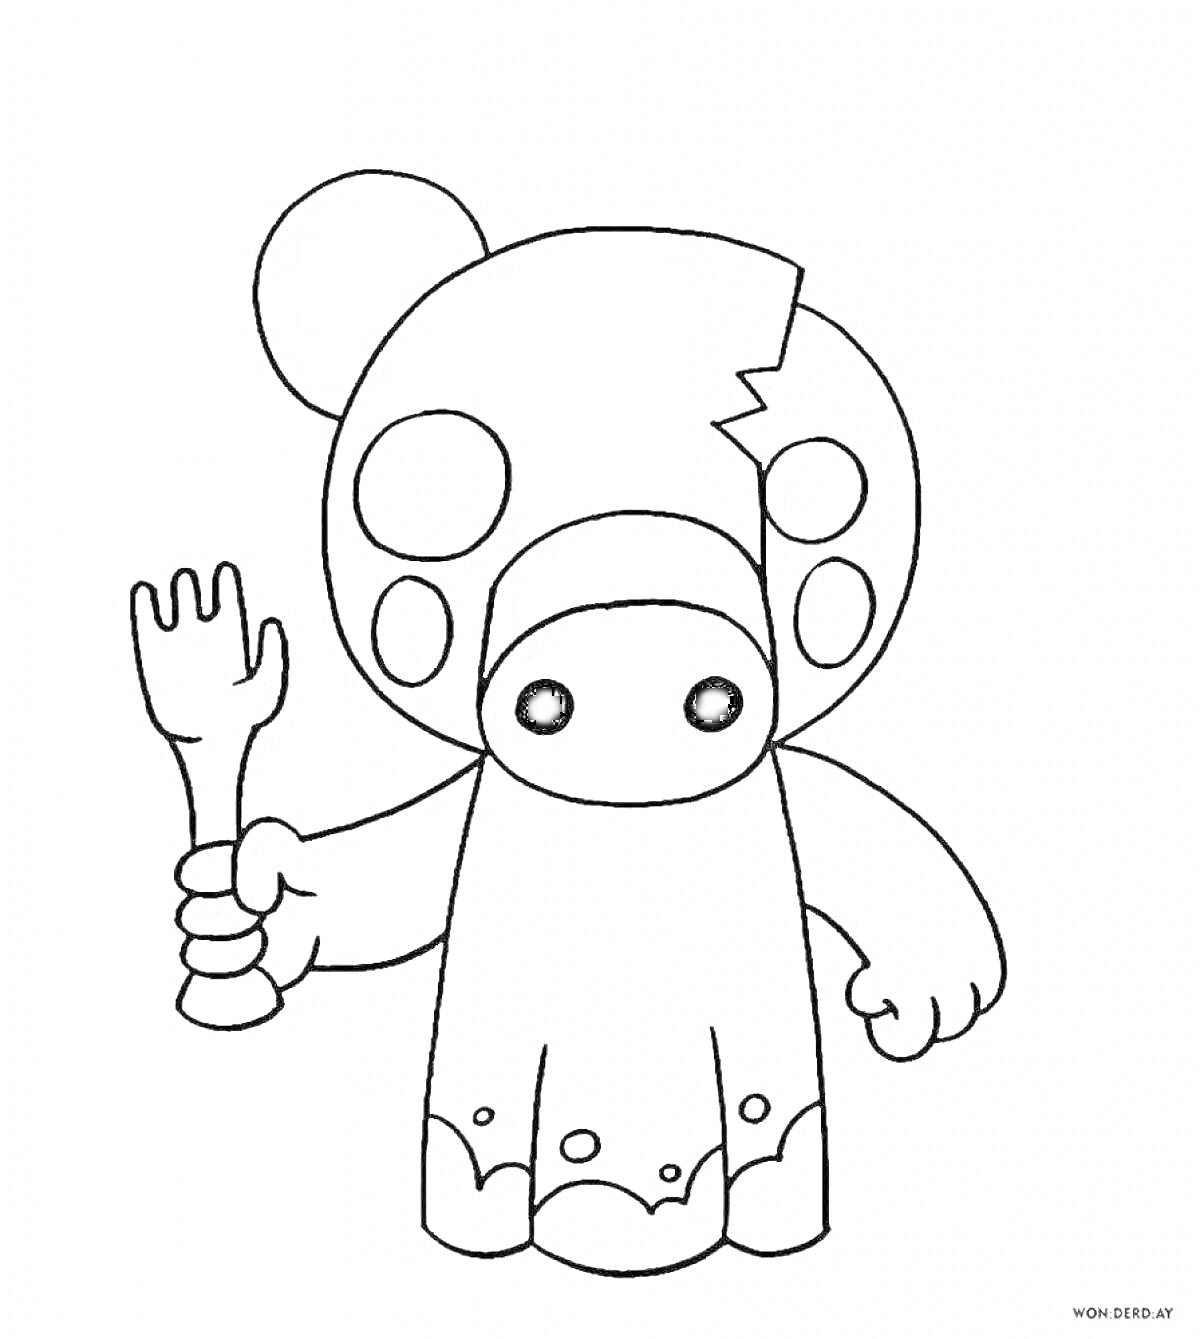 Раскраска Пигги из Роблокс, персонаж с трещиной на голове, держит вилку